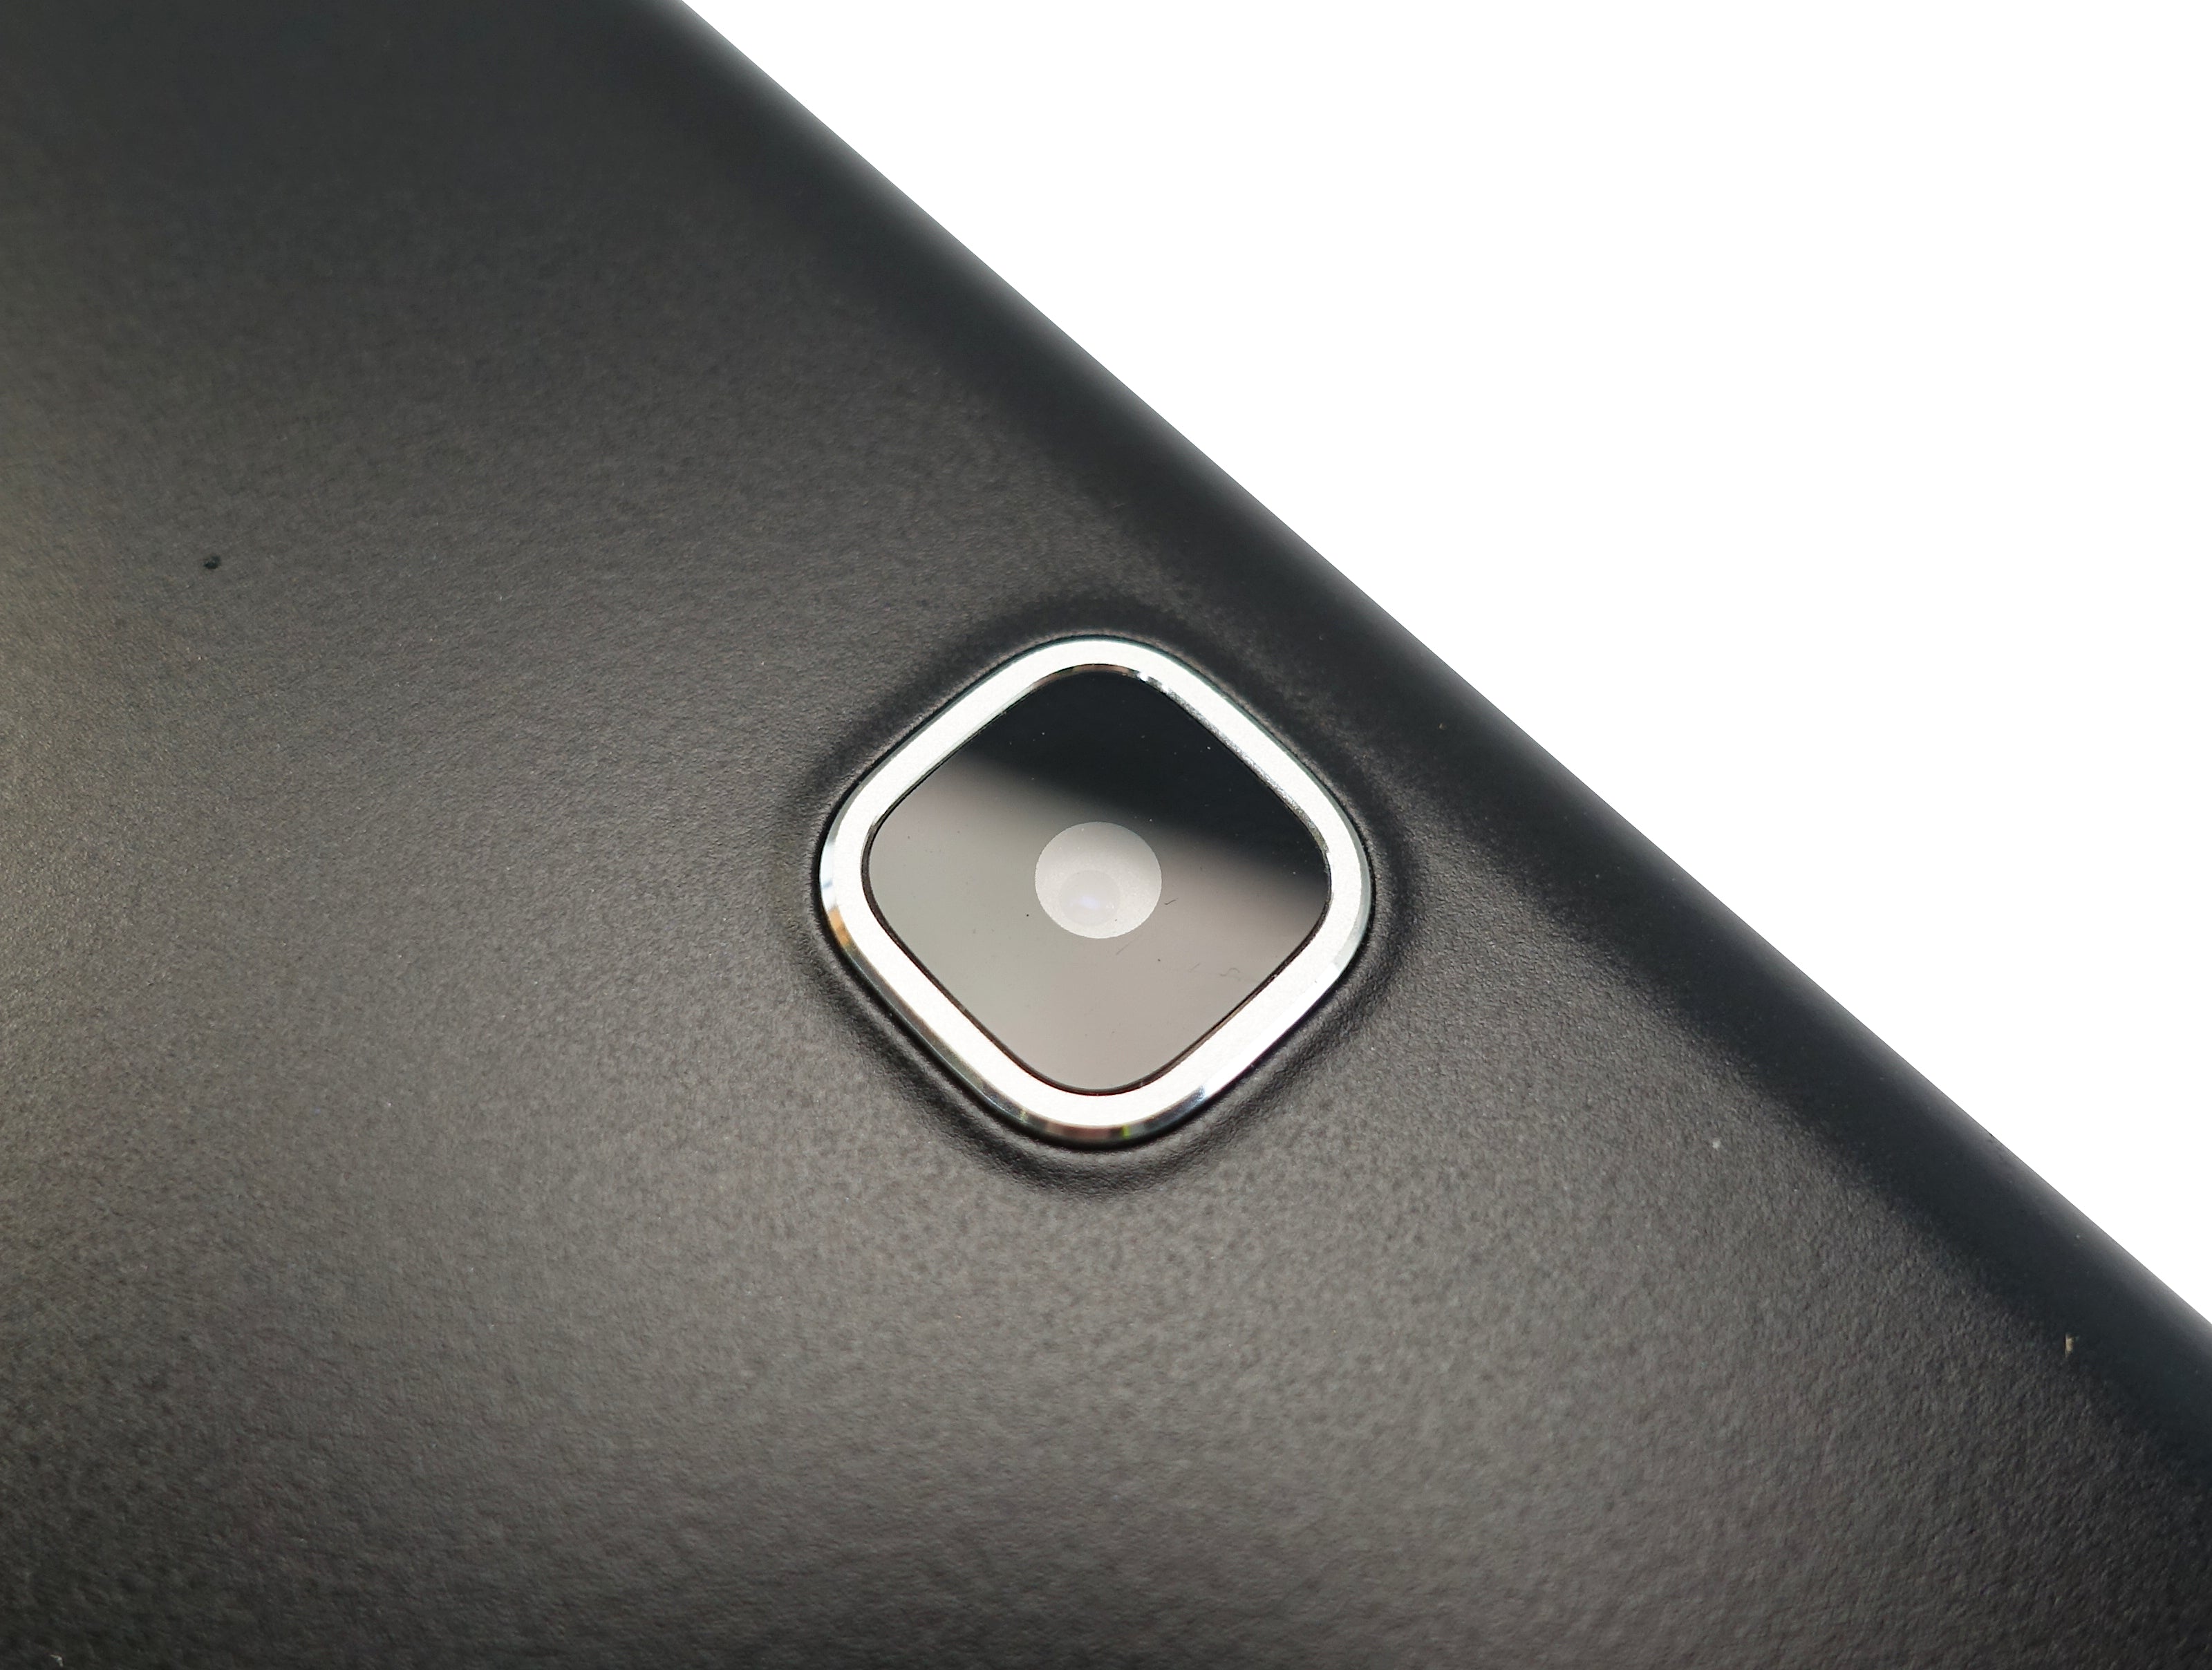 Samsung Galaxy Tab A Tablet, 9.7" 16GB, WiFi+Cellular, Vodafone, Black, SM-T555